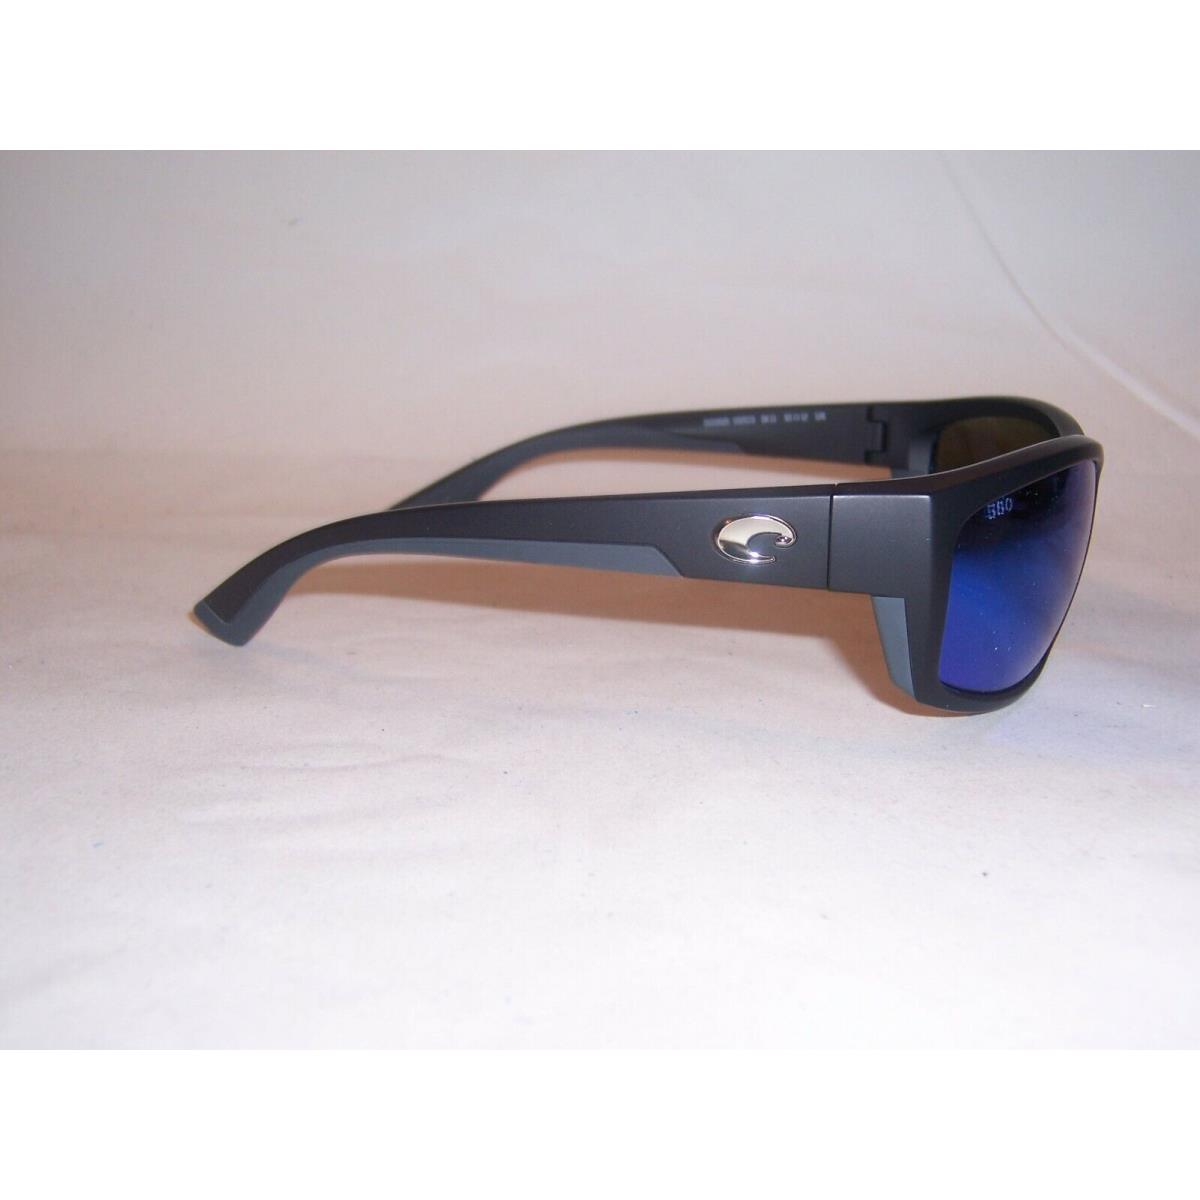 Costa Del Mar sunglasses Saltbreak - Black Frame, Blue Lens 3